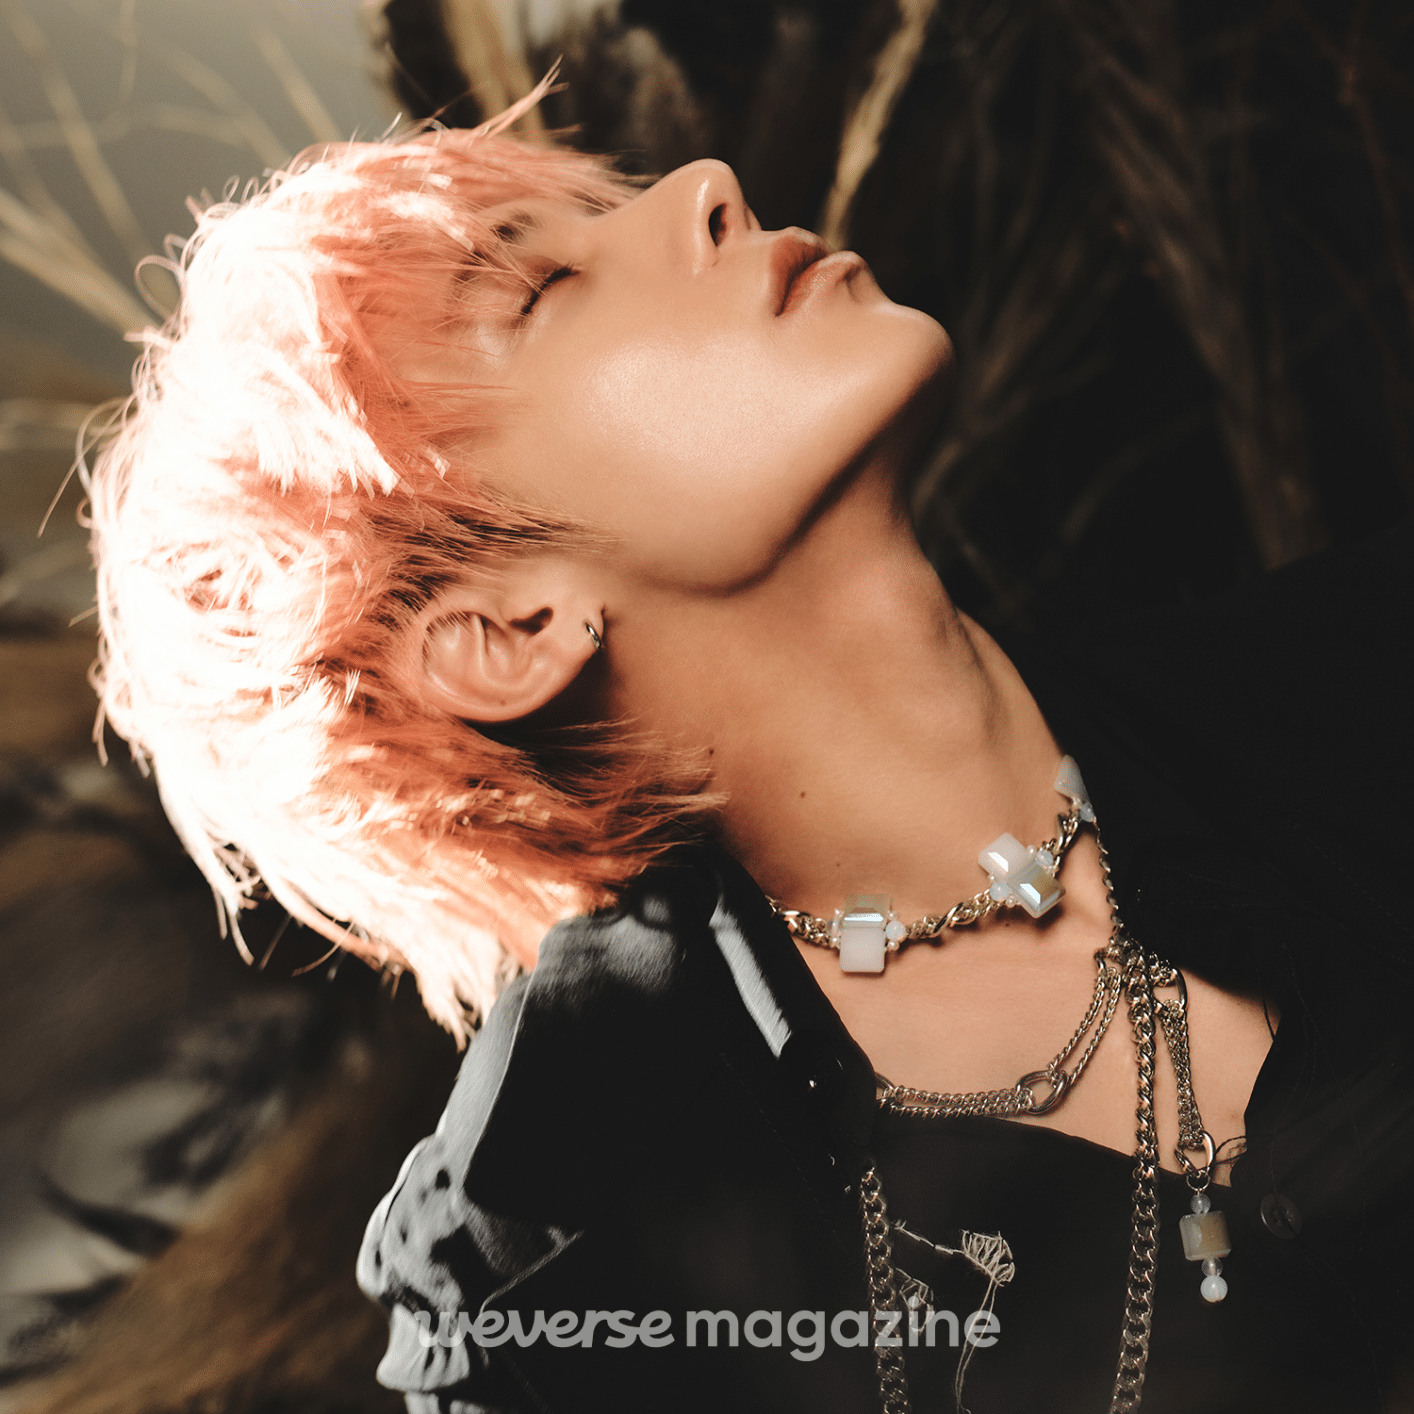 Magazine] TAEHYUN: “I think once you've felt your fans' presence 